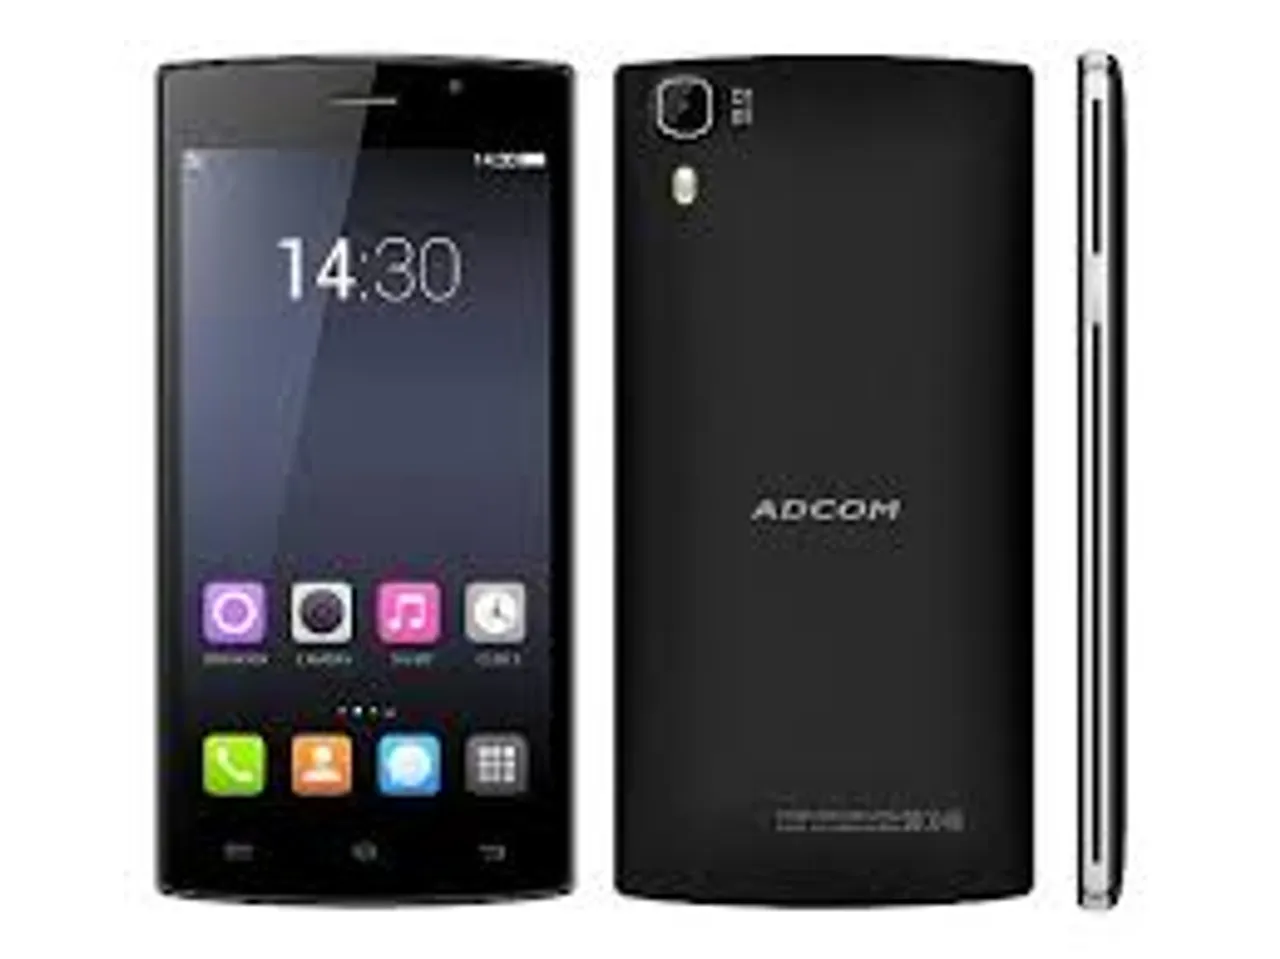 ADCOM announces quad core smartphone A54